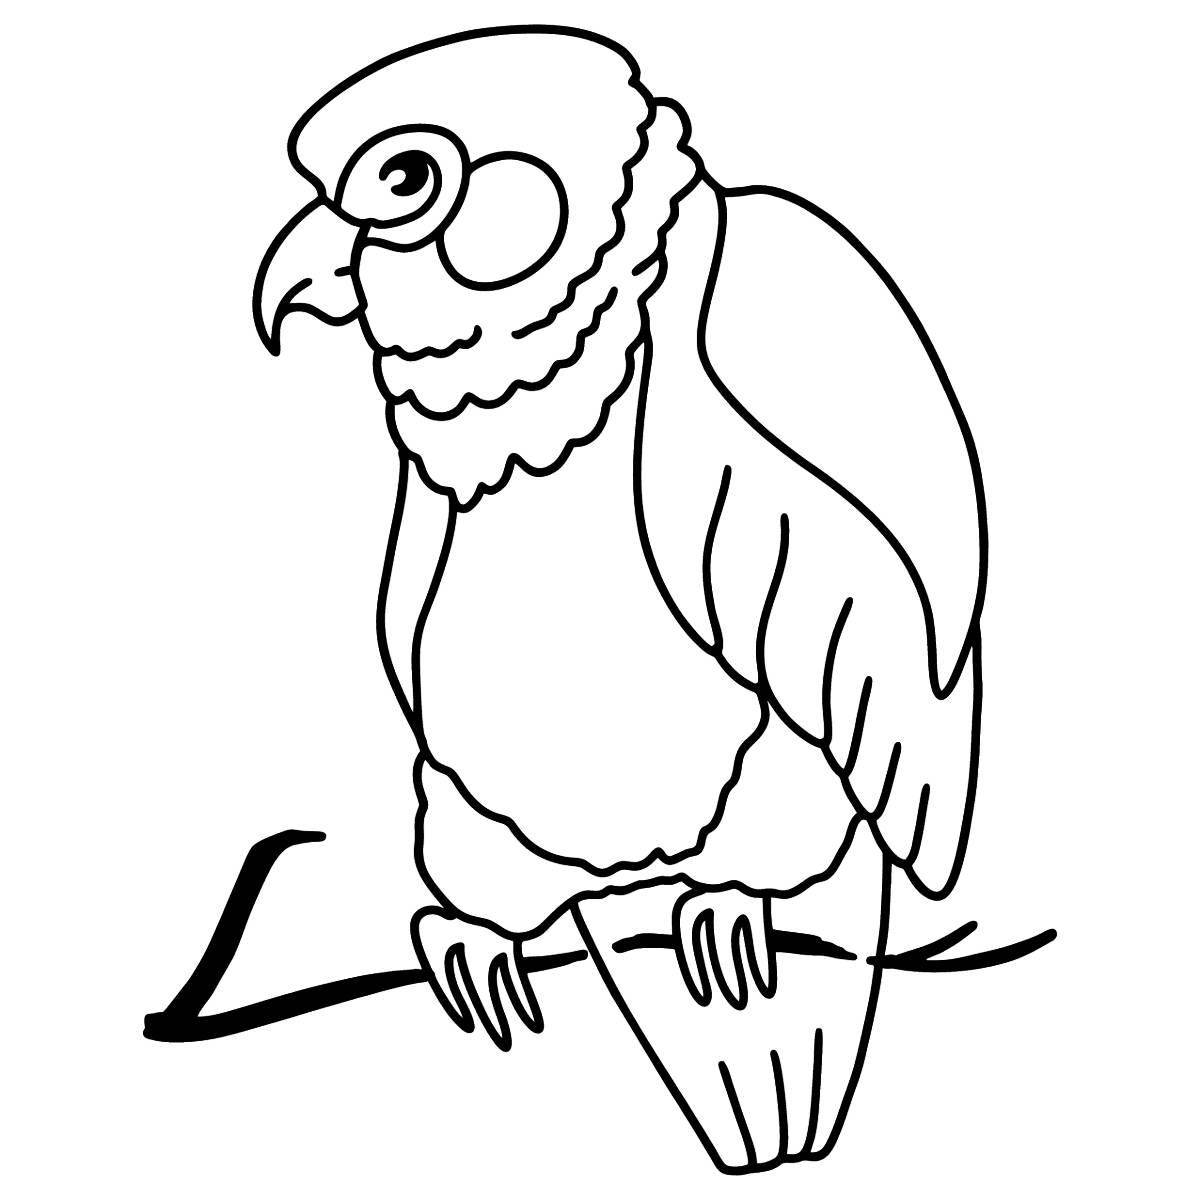 Увлекательная раскраска попугай для детей 3-4 лет